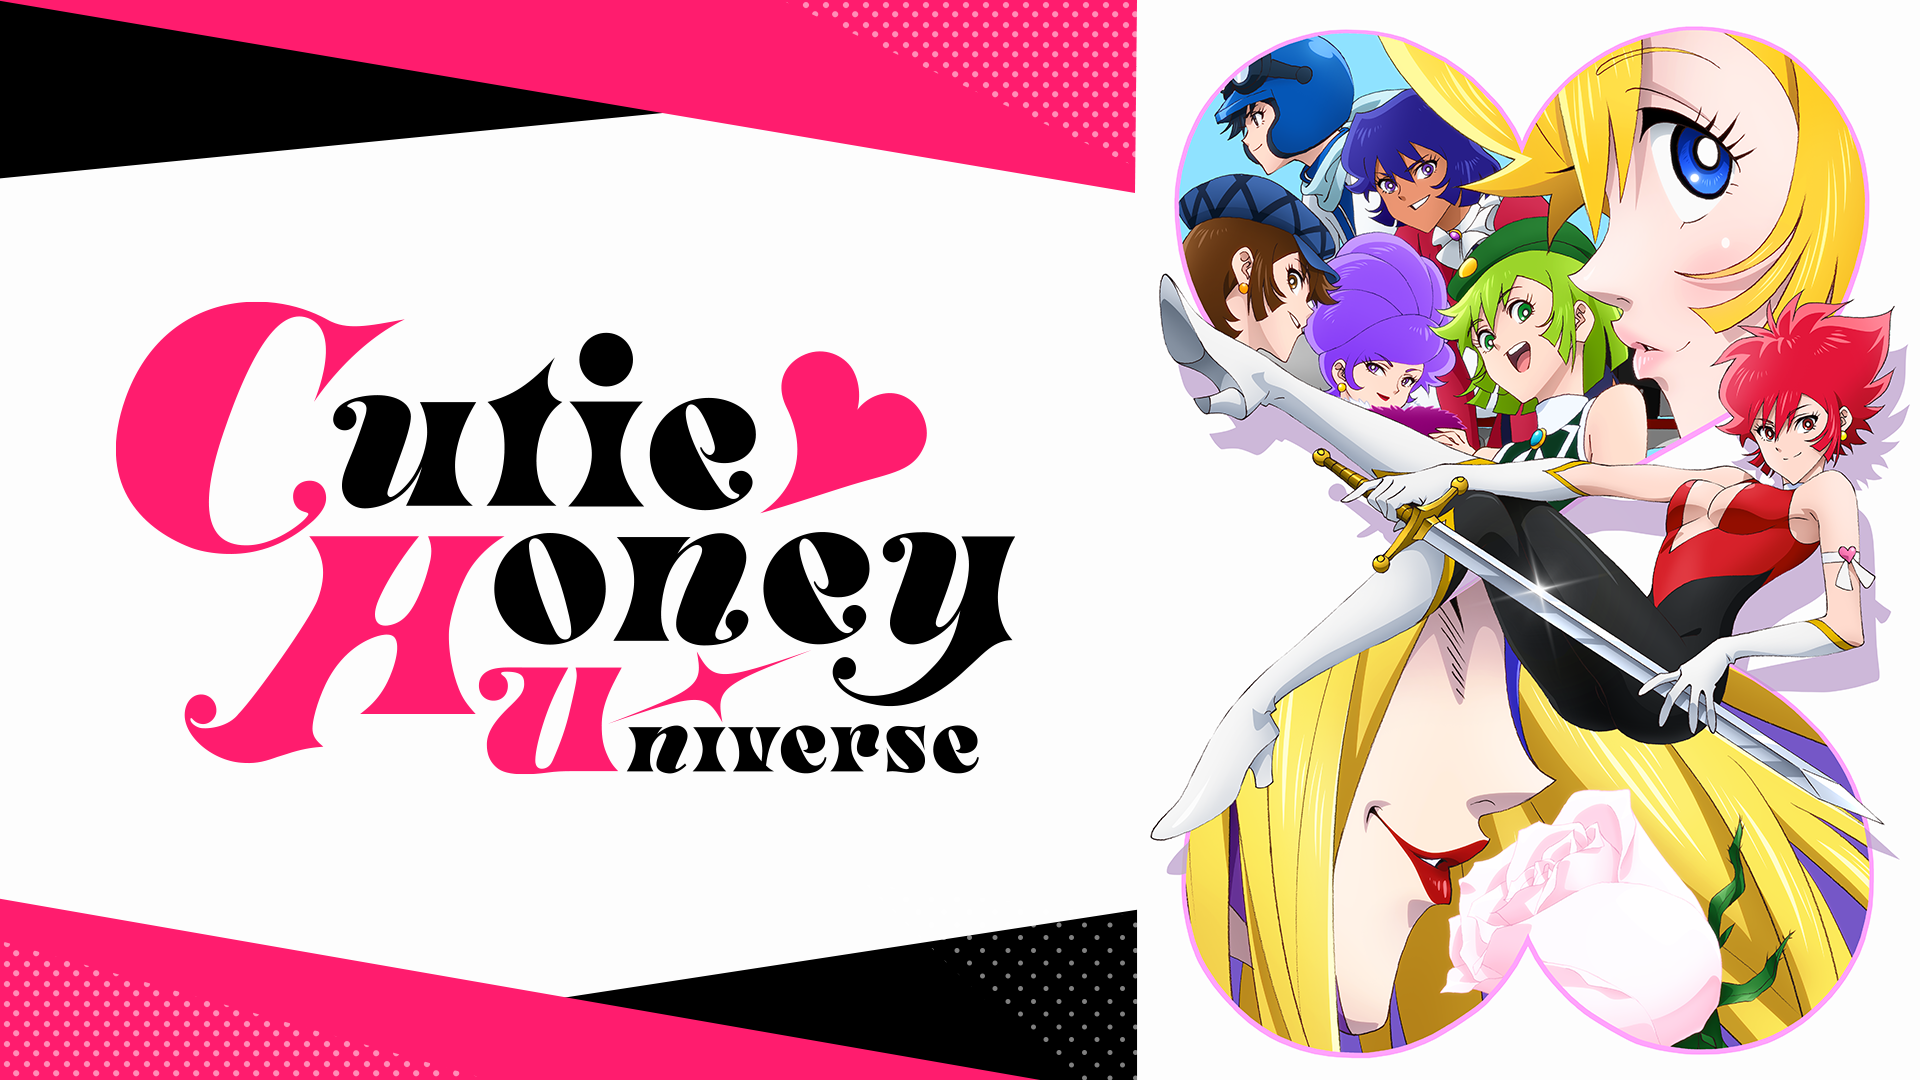 Cutie Honey Universe 19年秋アニメ 新作アニメラインナップ Abemaアニメチャンネル